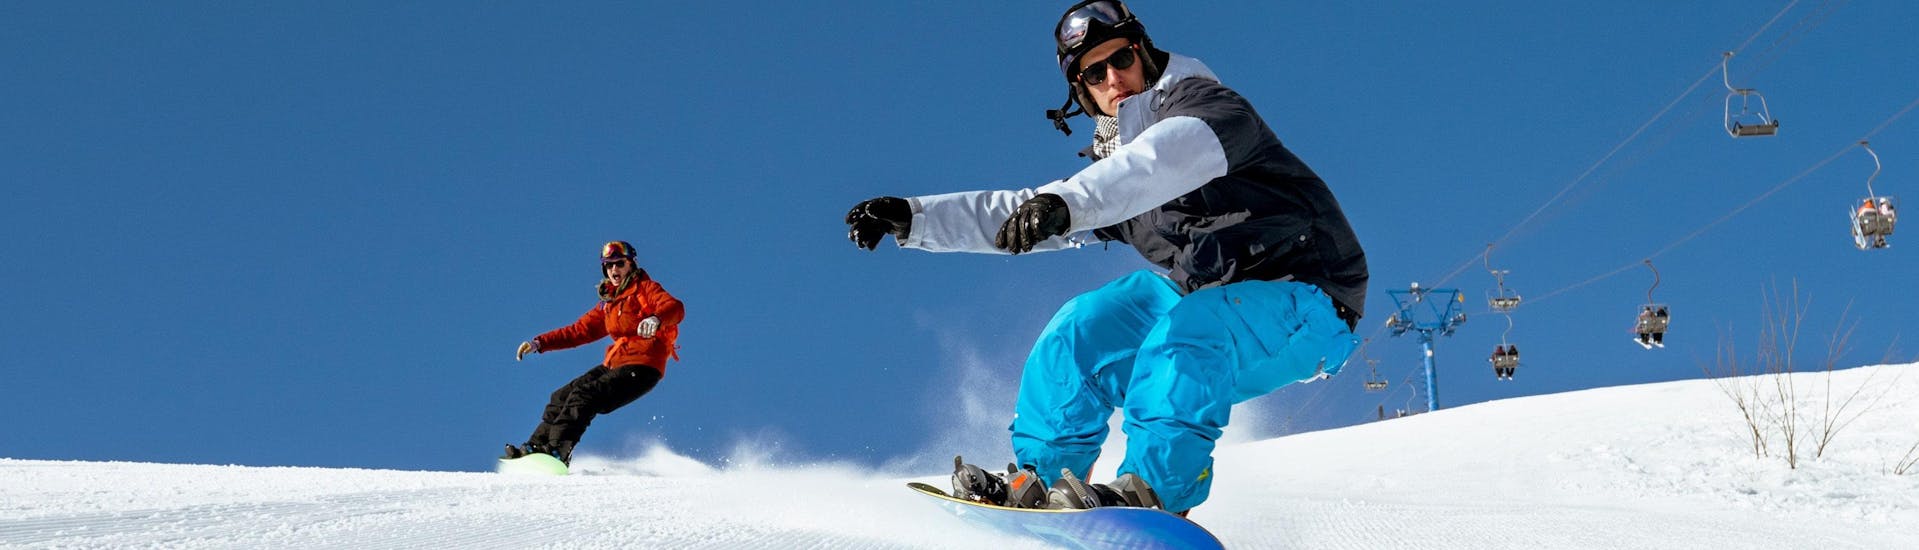 Zwei Snowboarder brettern bei ihrem Snowboardkurs in München Umgebung eine frisch präparierte Piste hinunter.